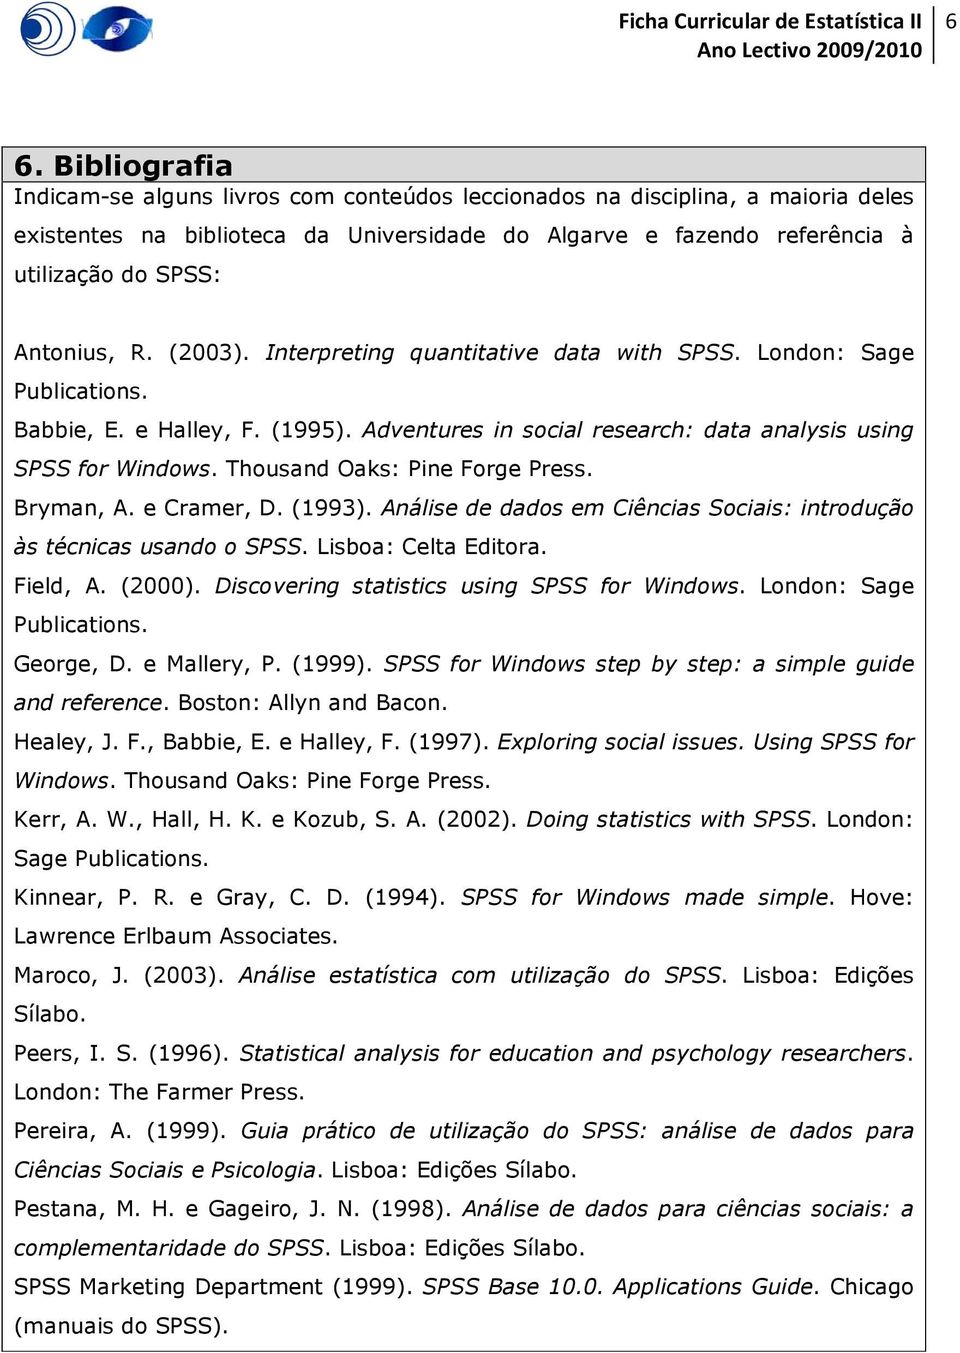 Thousand Oaks: Pine Forge Press. Bryman, A. e Cramer, D. (1993). Análise de dados em Ciências Sociais: introdução às técnicas usando o SPSS. Lisboa: Celta Editora. Field, A. (2000).